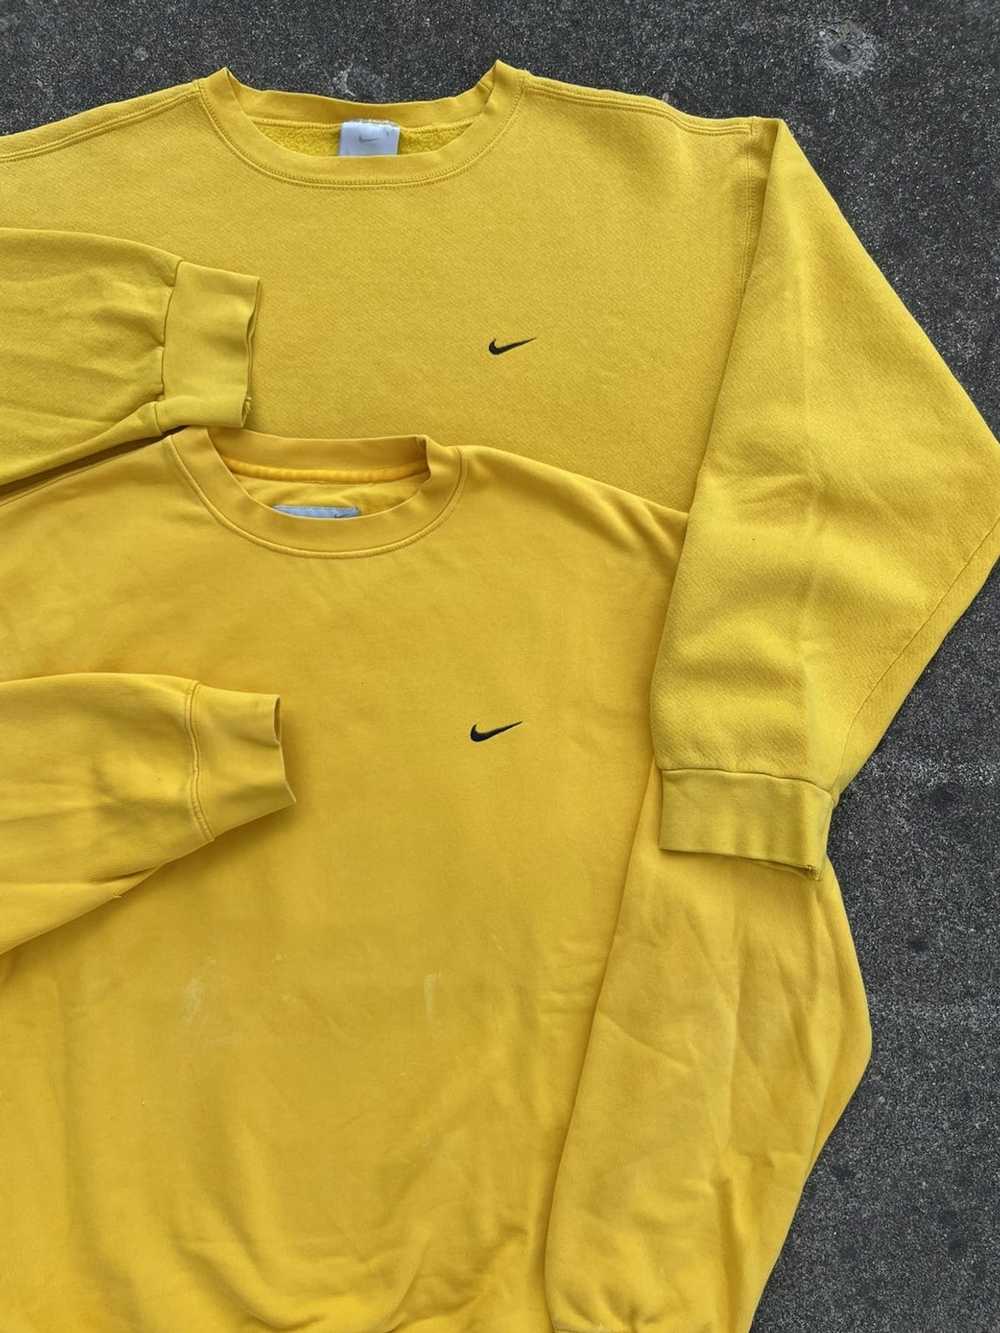 Nike × Streetwear × Vintage Vintage Nike yellow s… - image 1